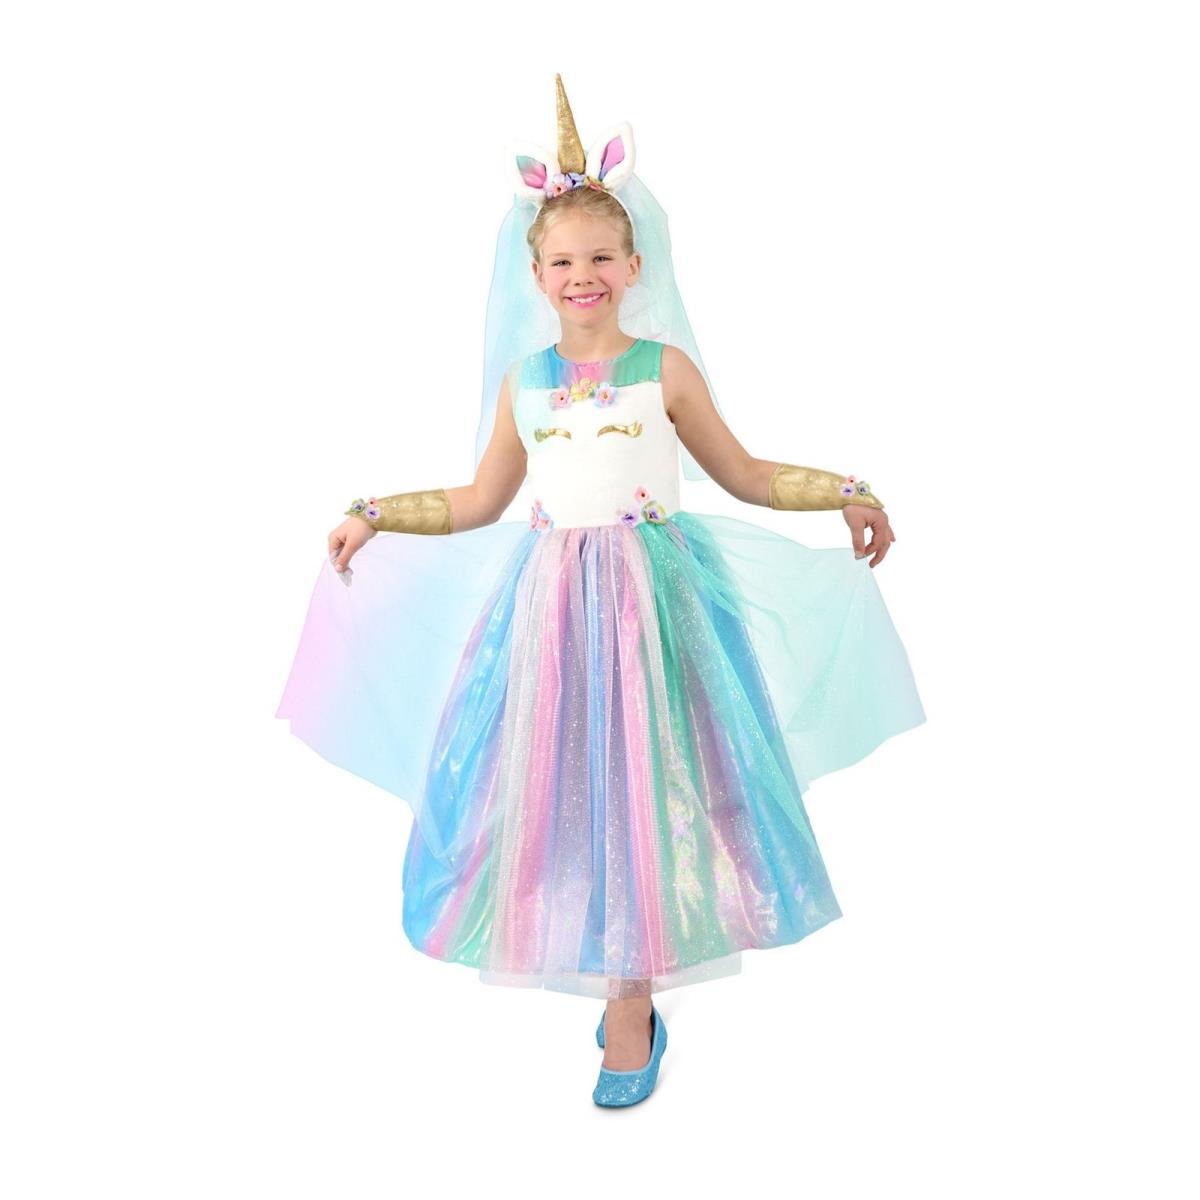 410082 Girls Lovely Lady Unicorn Child Costume - Extra Small